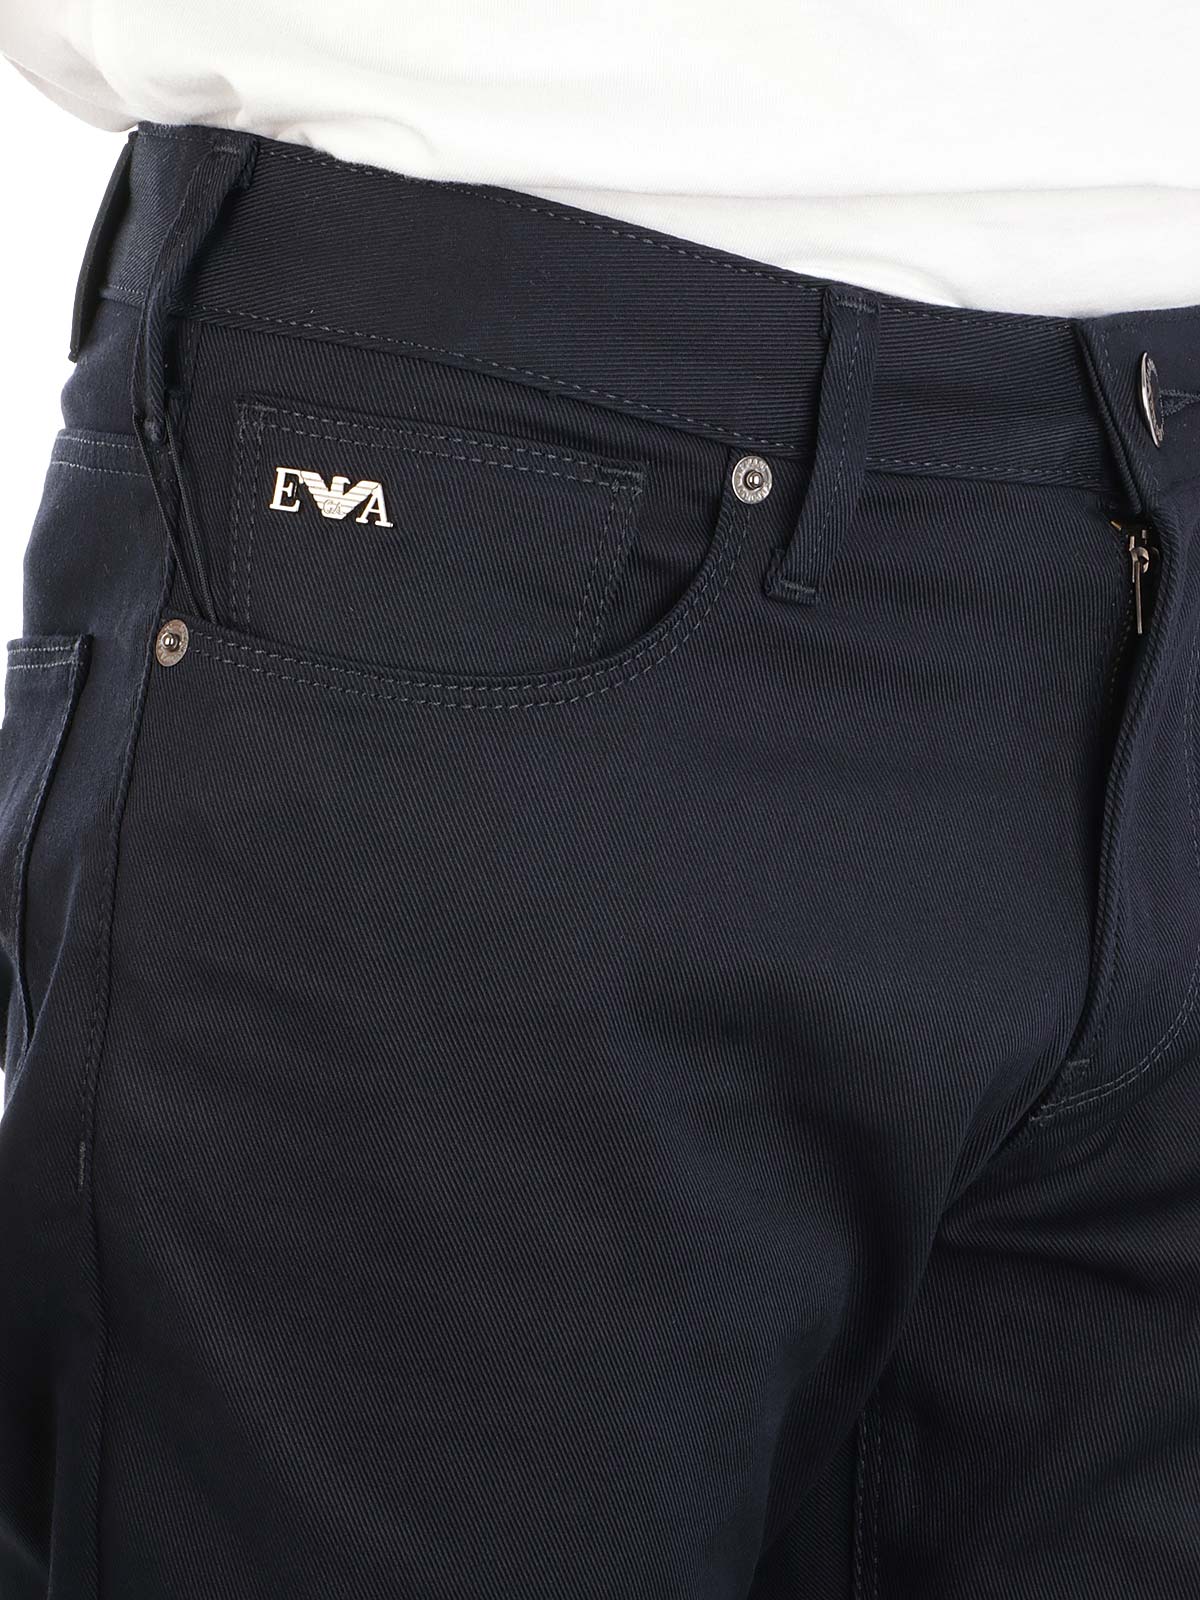 Immagine di EMPORIO ARMANI | Jeans Uomo in 5 Tasche Stretch